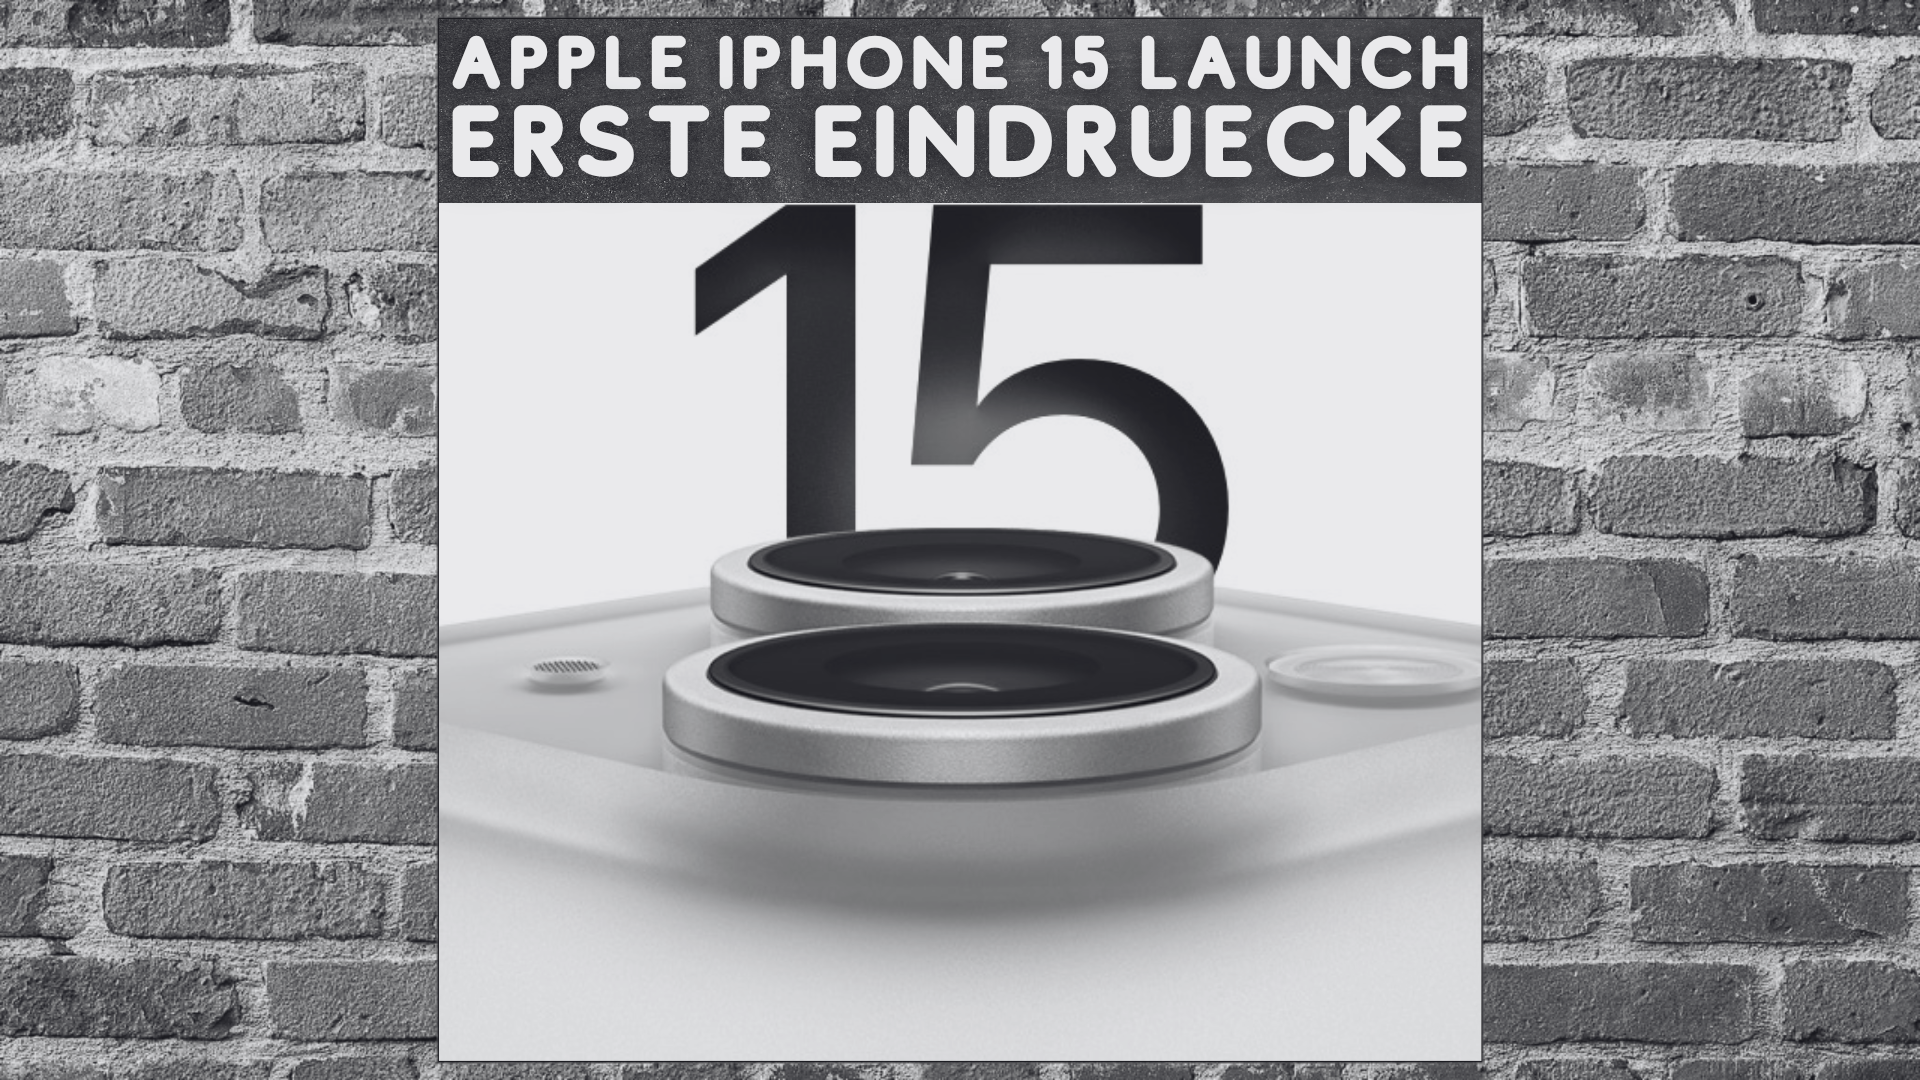 Apple iPhone 15 Launch - Erste Eindruecke